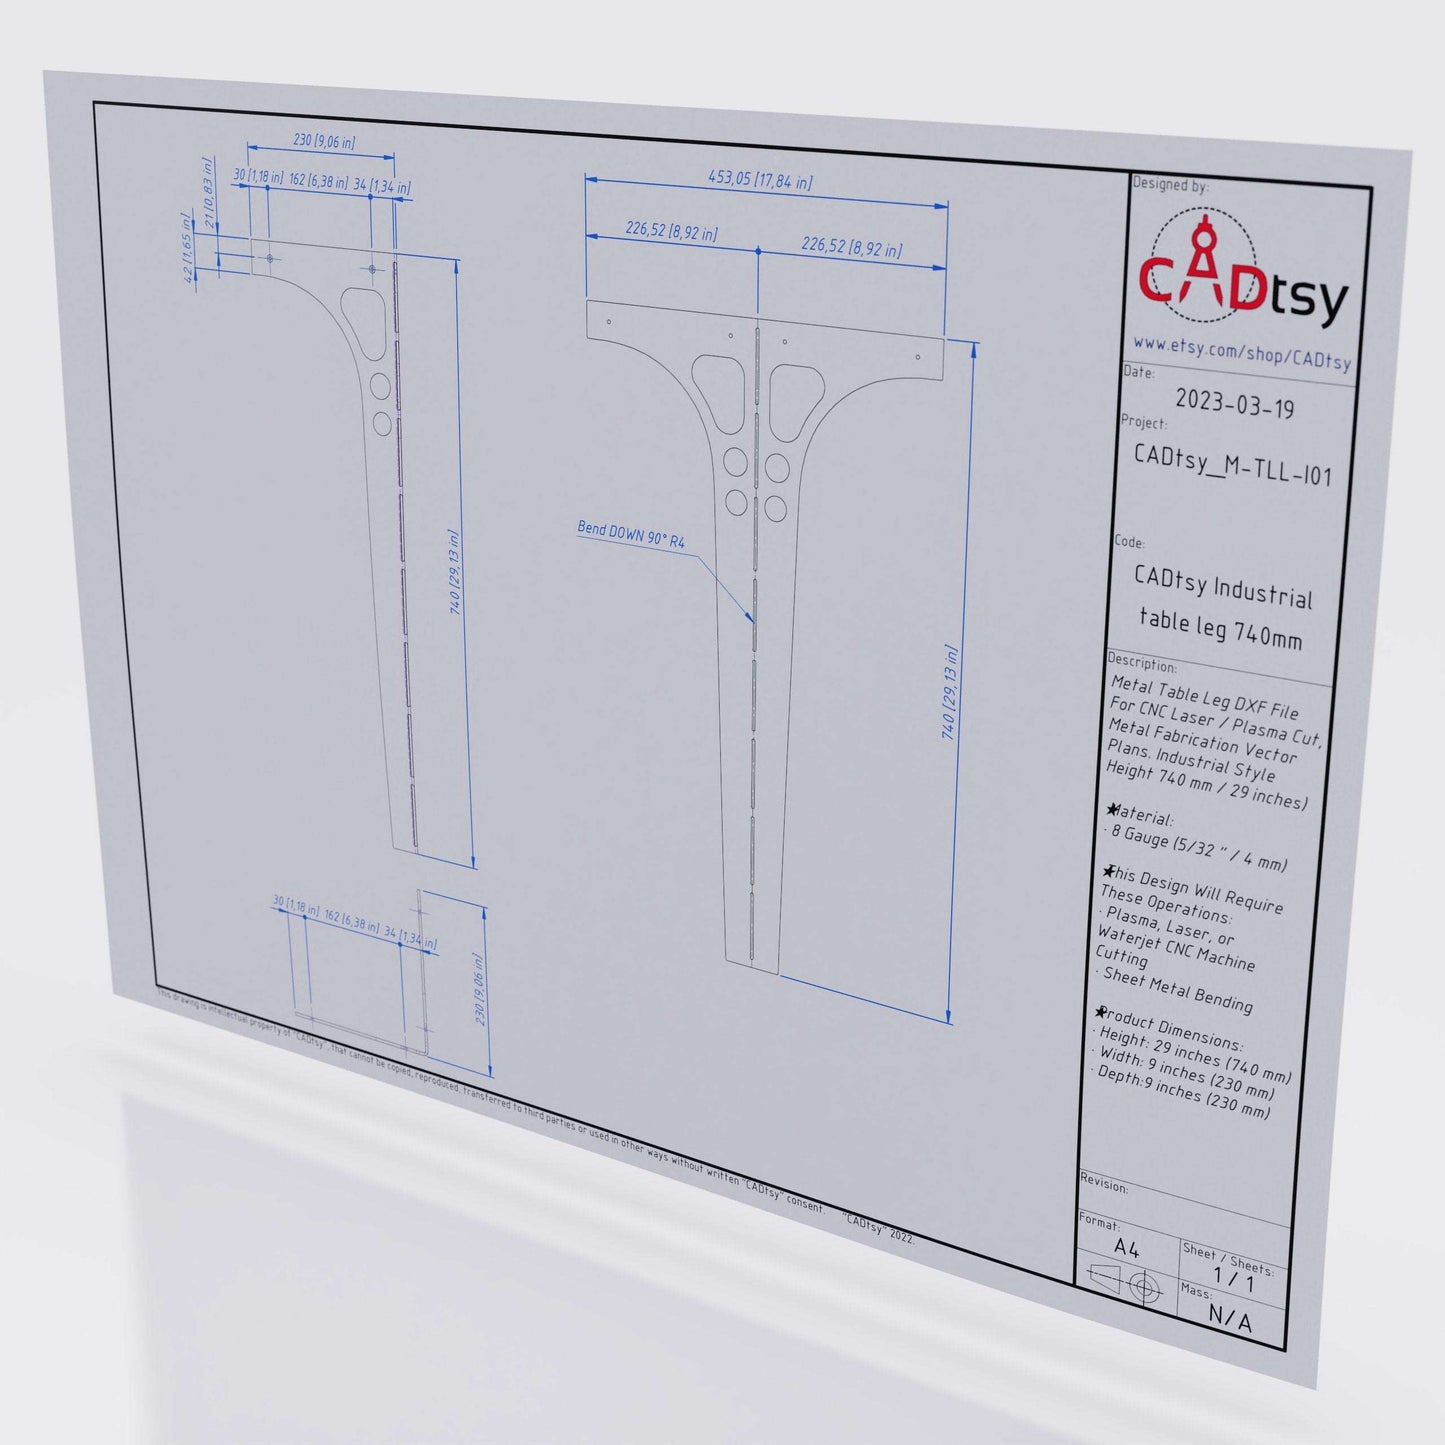 Industrial Table Metal Leg DXF SVG Files, Cnc Laser Plasma Pattern. Sheet Metal Bending PDF Drawings. Height 740 mm (29")